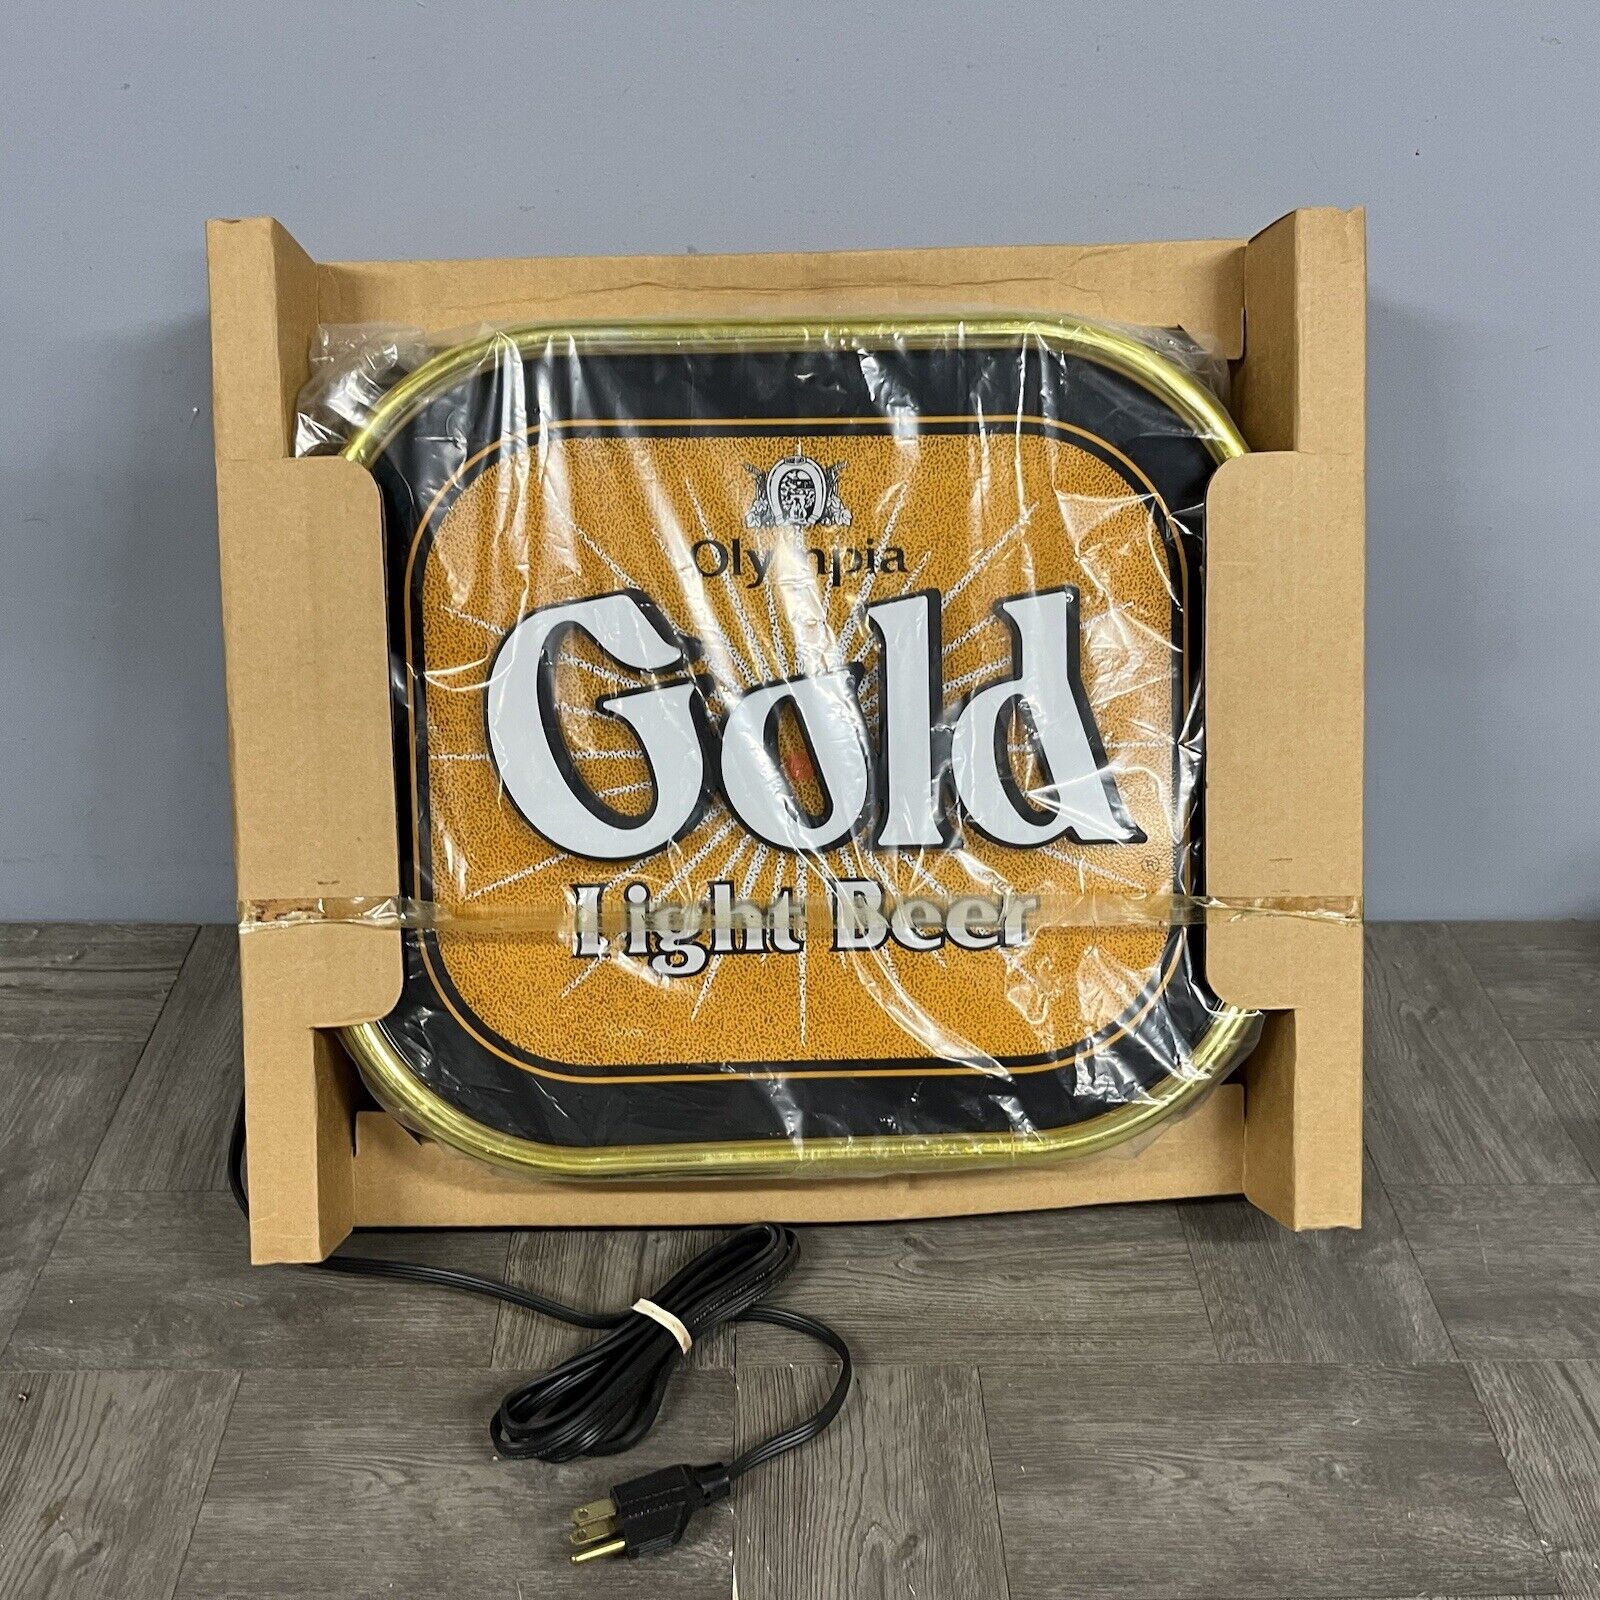 VTG New NOS Olympia Gold Light Beer Lighted Sign Motion Gitter Rare Old Stock